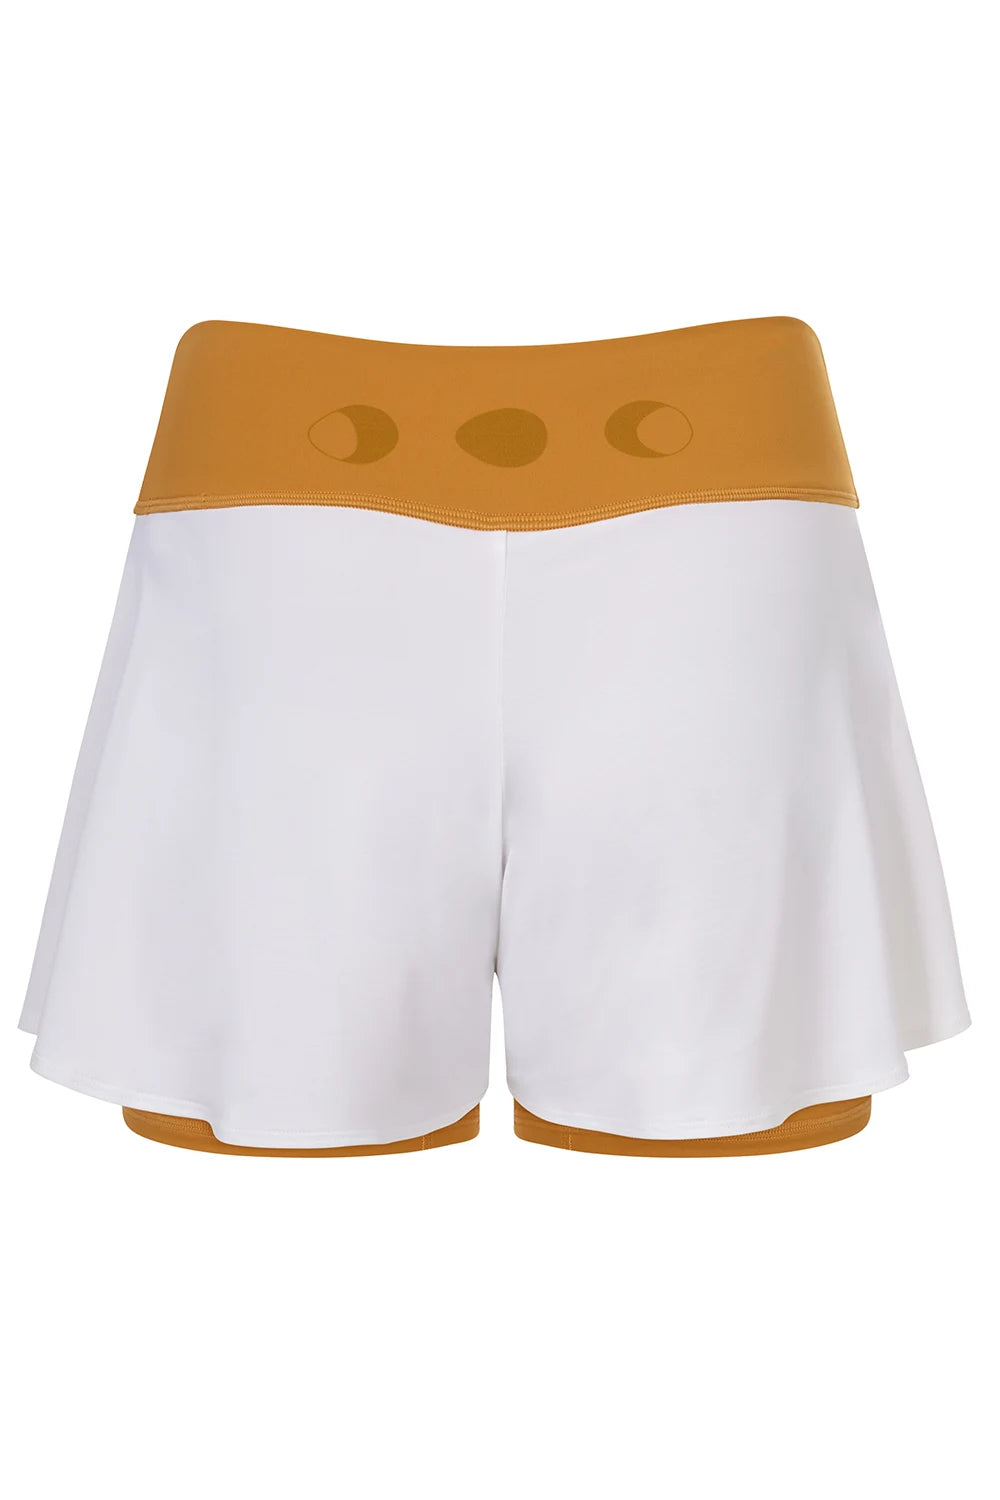 Silueta de Shorts de yoga de Yogimi en color mostaza con capa blanca. Modelo Prana Inca Gold-White